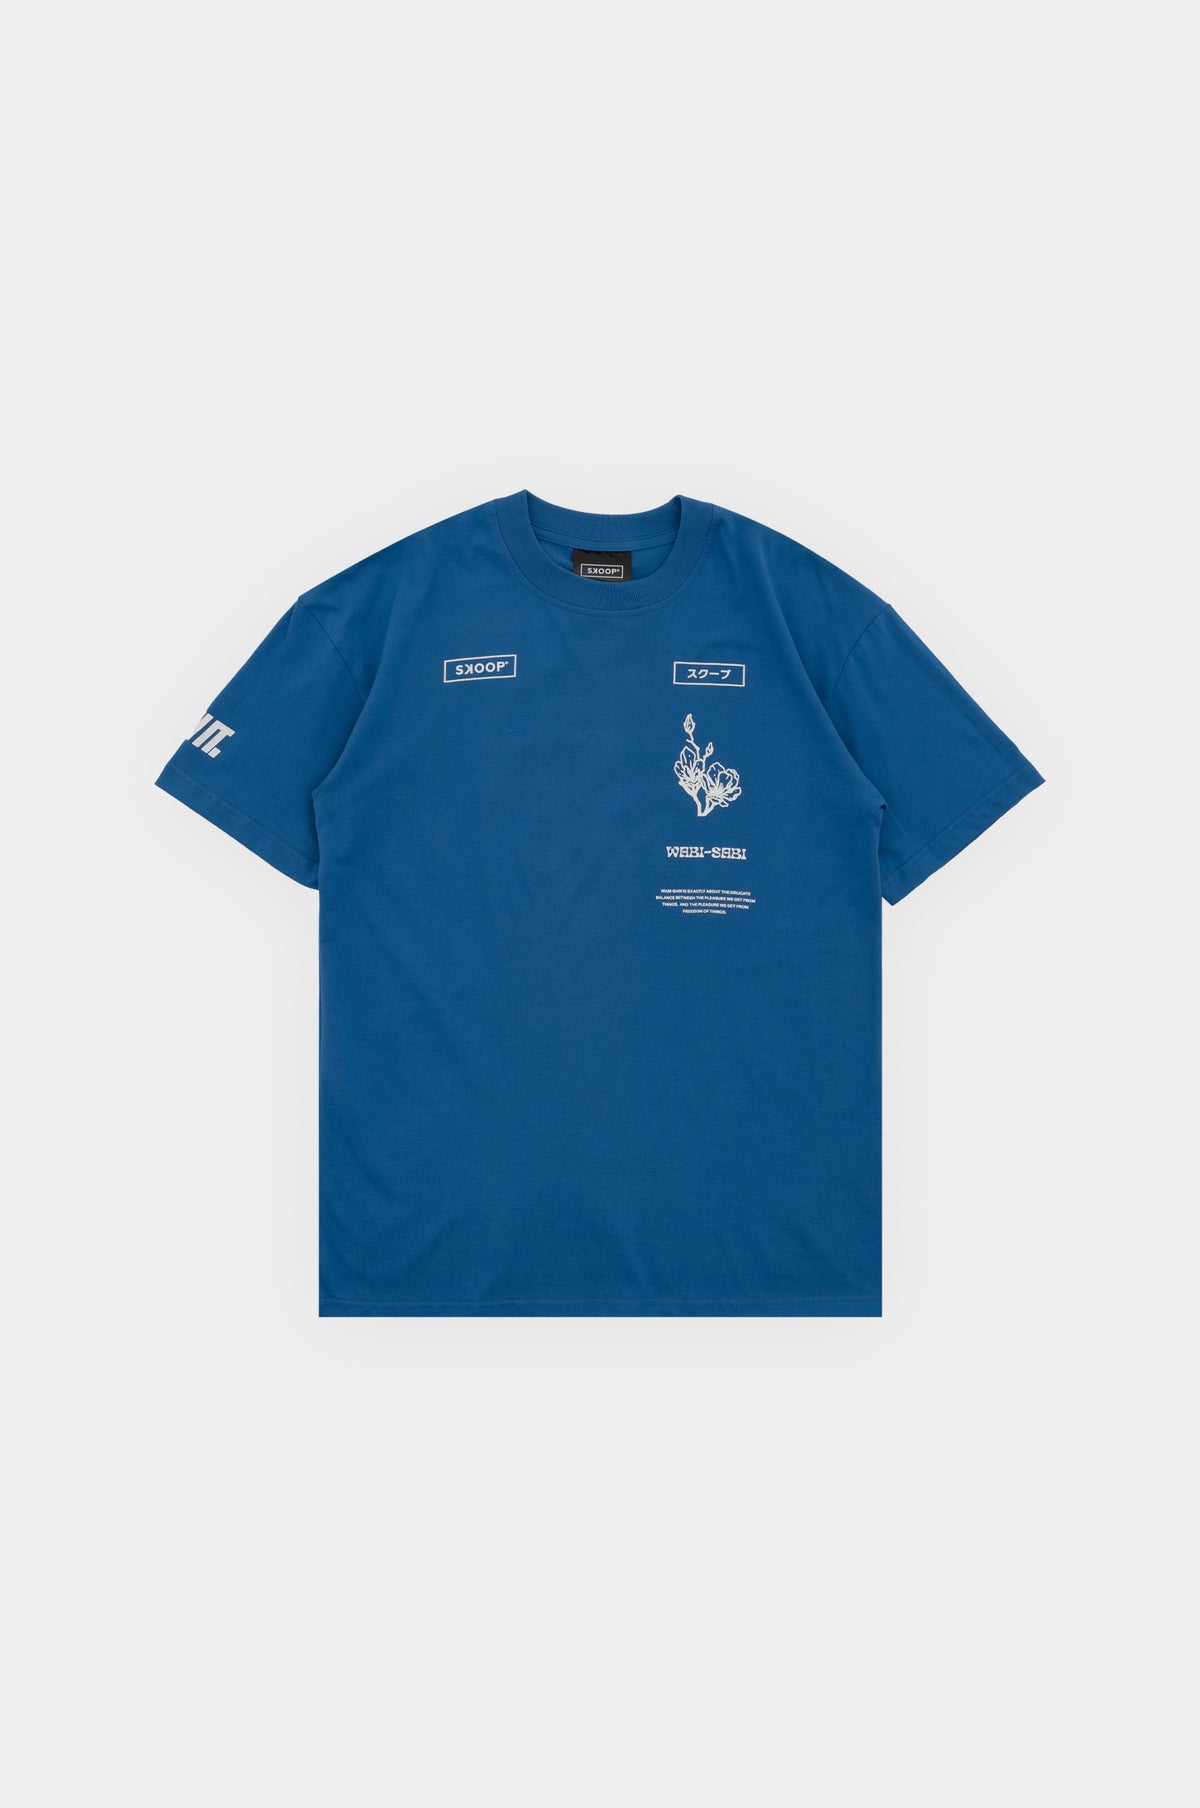 SKOOP® Subtle Grace Blue Shirt - SKOOP Kommunity